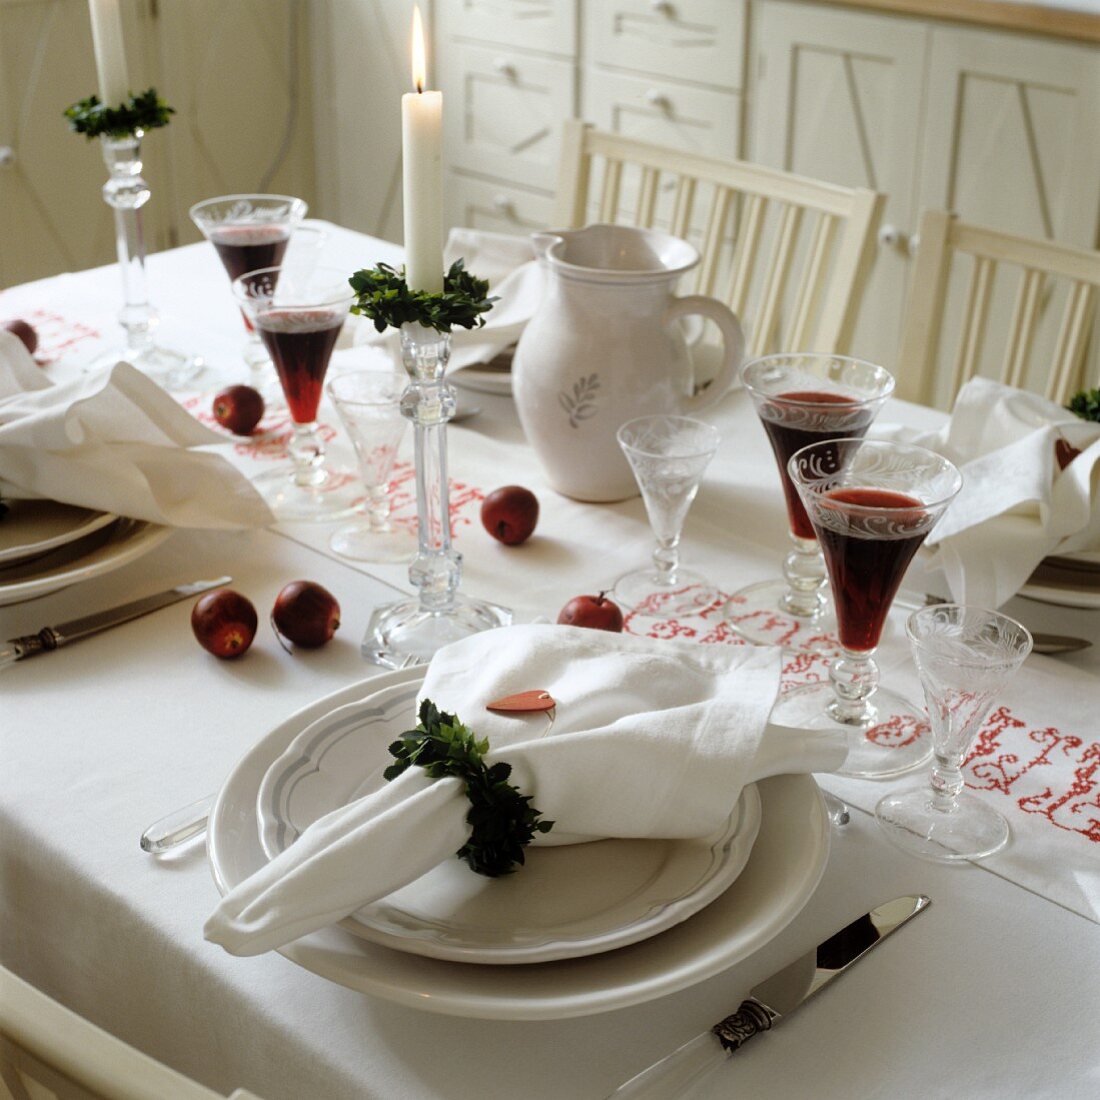 Blätterkranz als Serviettenring auf weihnachtlich gedecktem Tisch